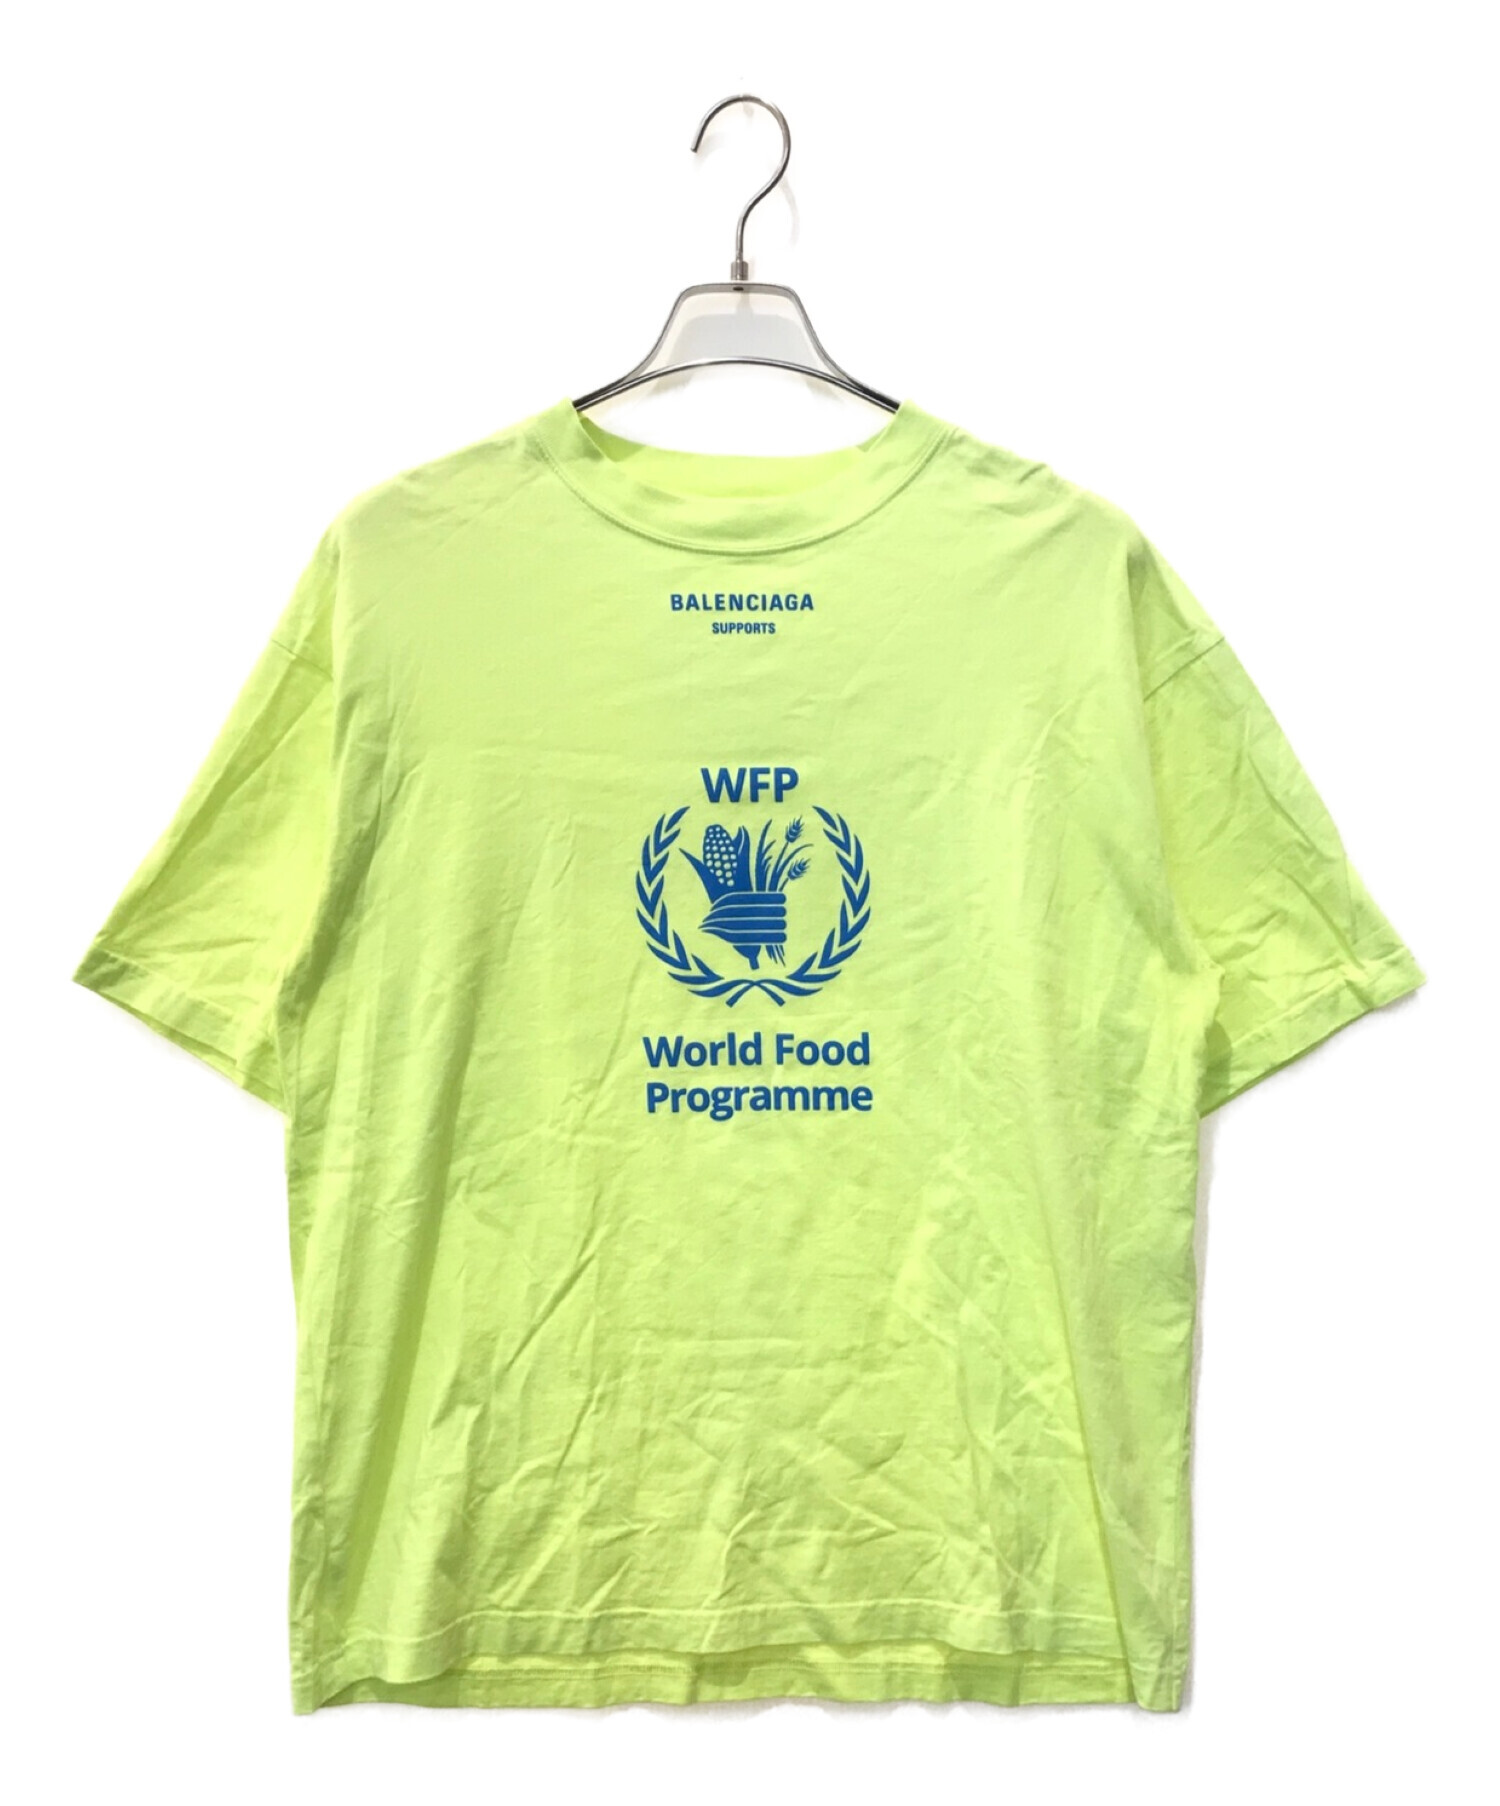 BALENCIAGA (バレンシアガ) WFPプリントロゴTシャツ イエロー サイズ:XS